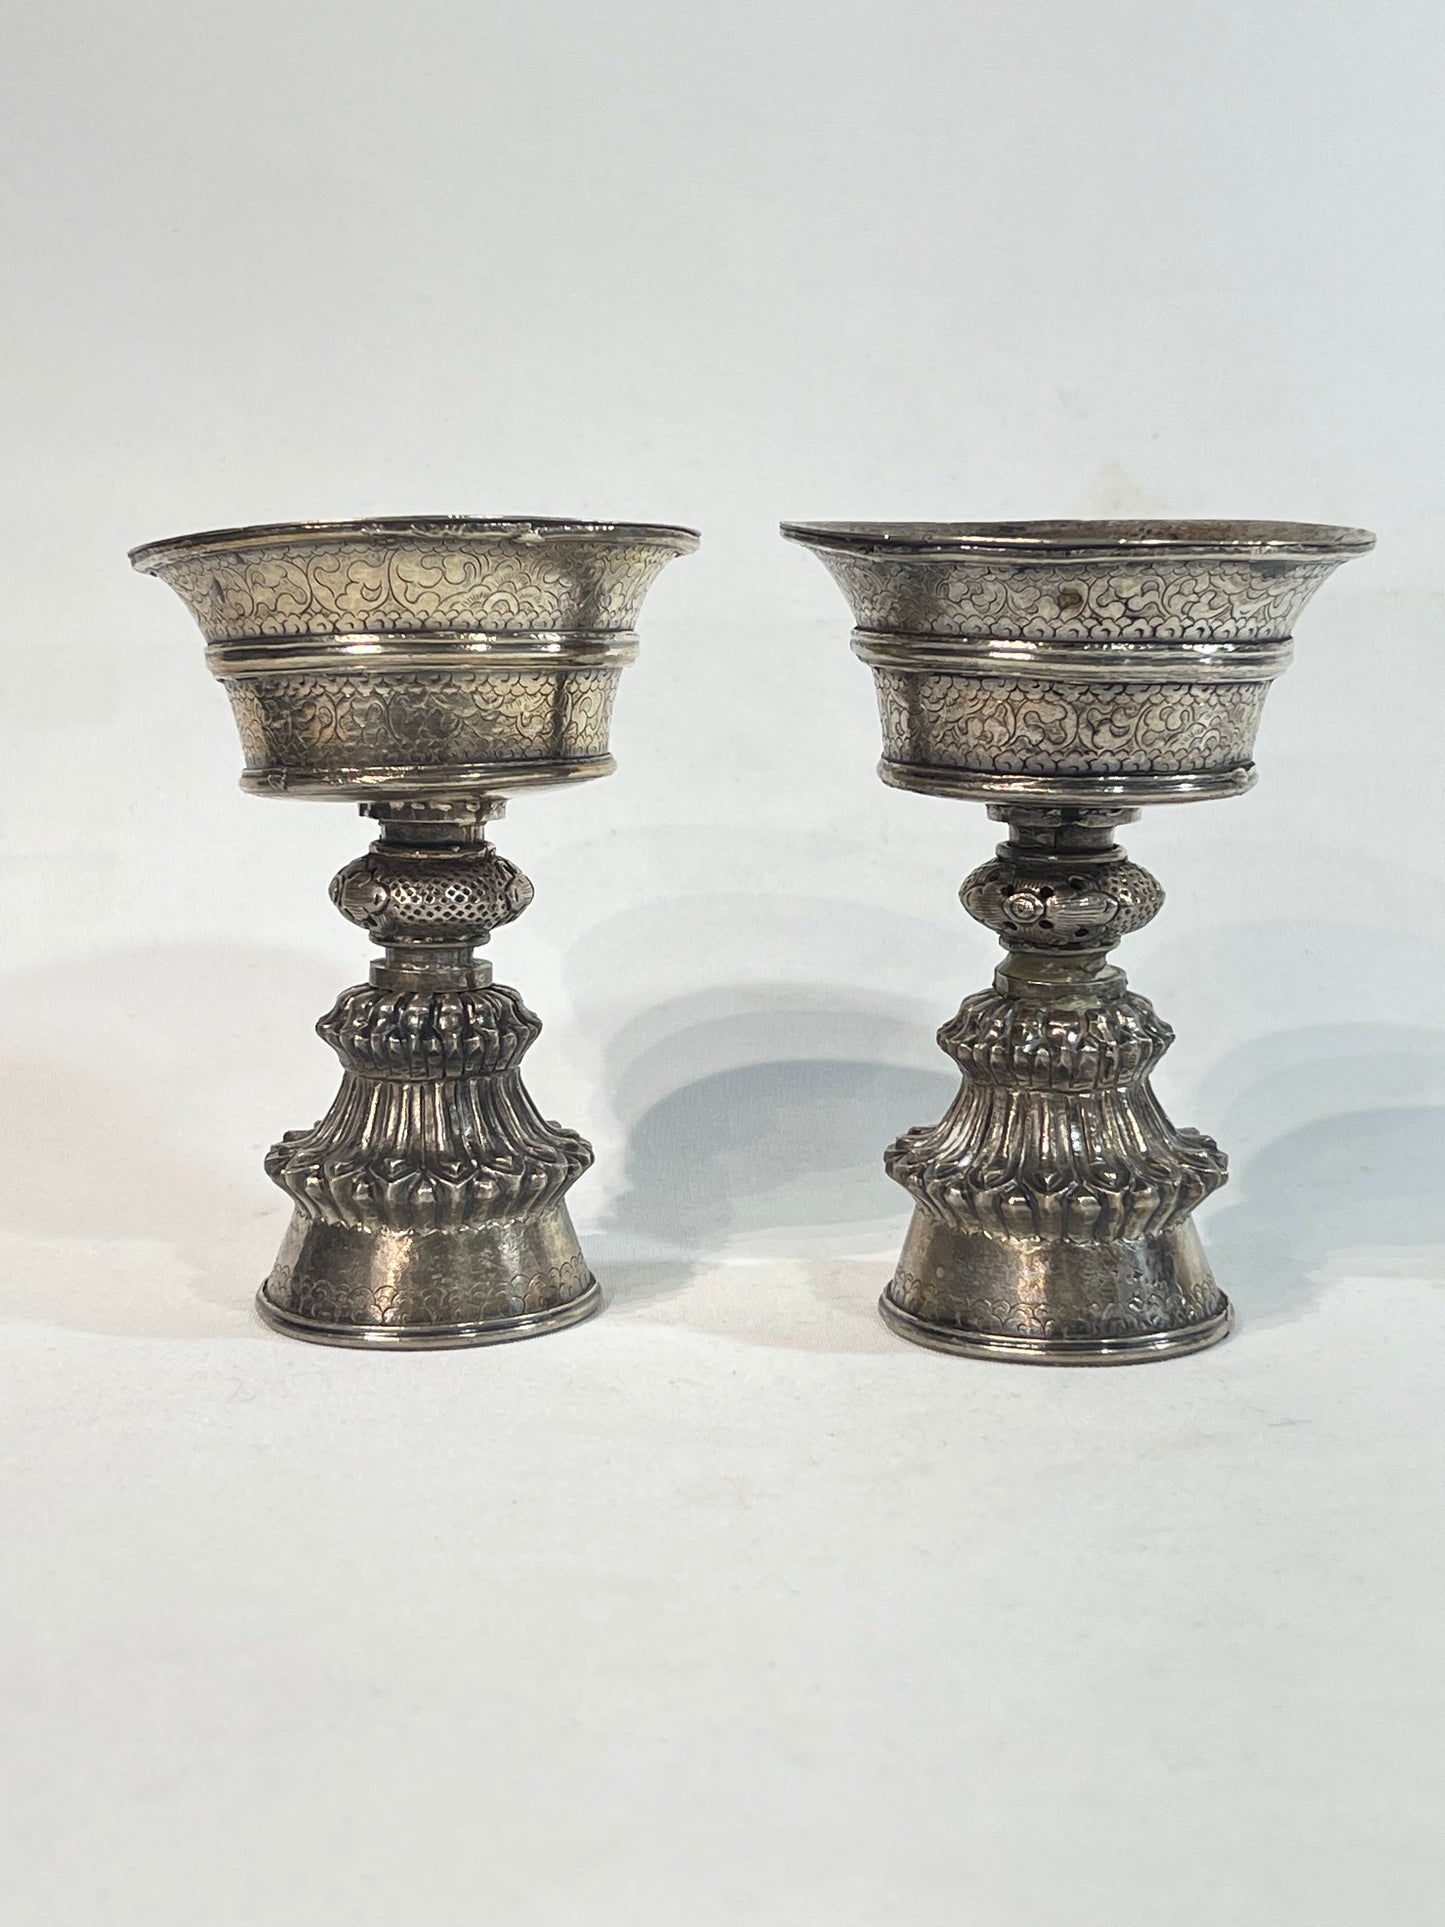 A pair of Tibetan silver butter lamps